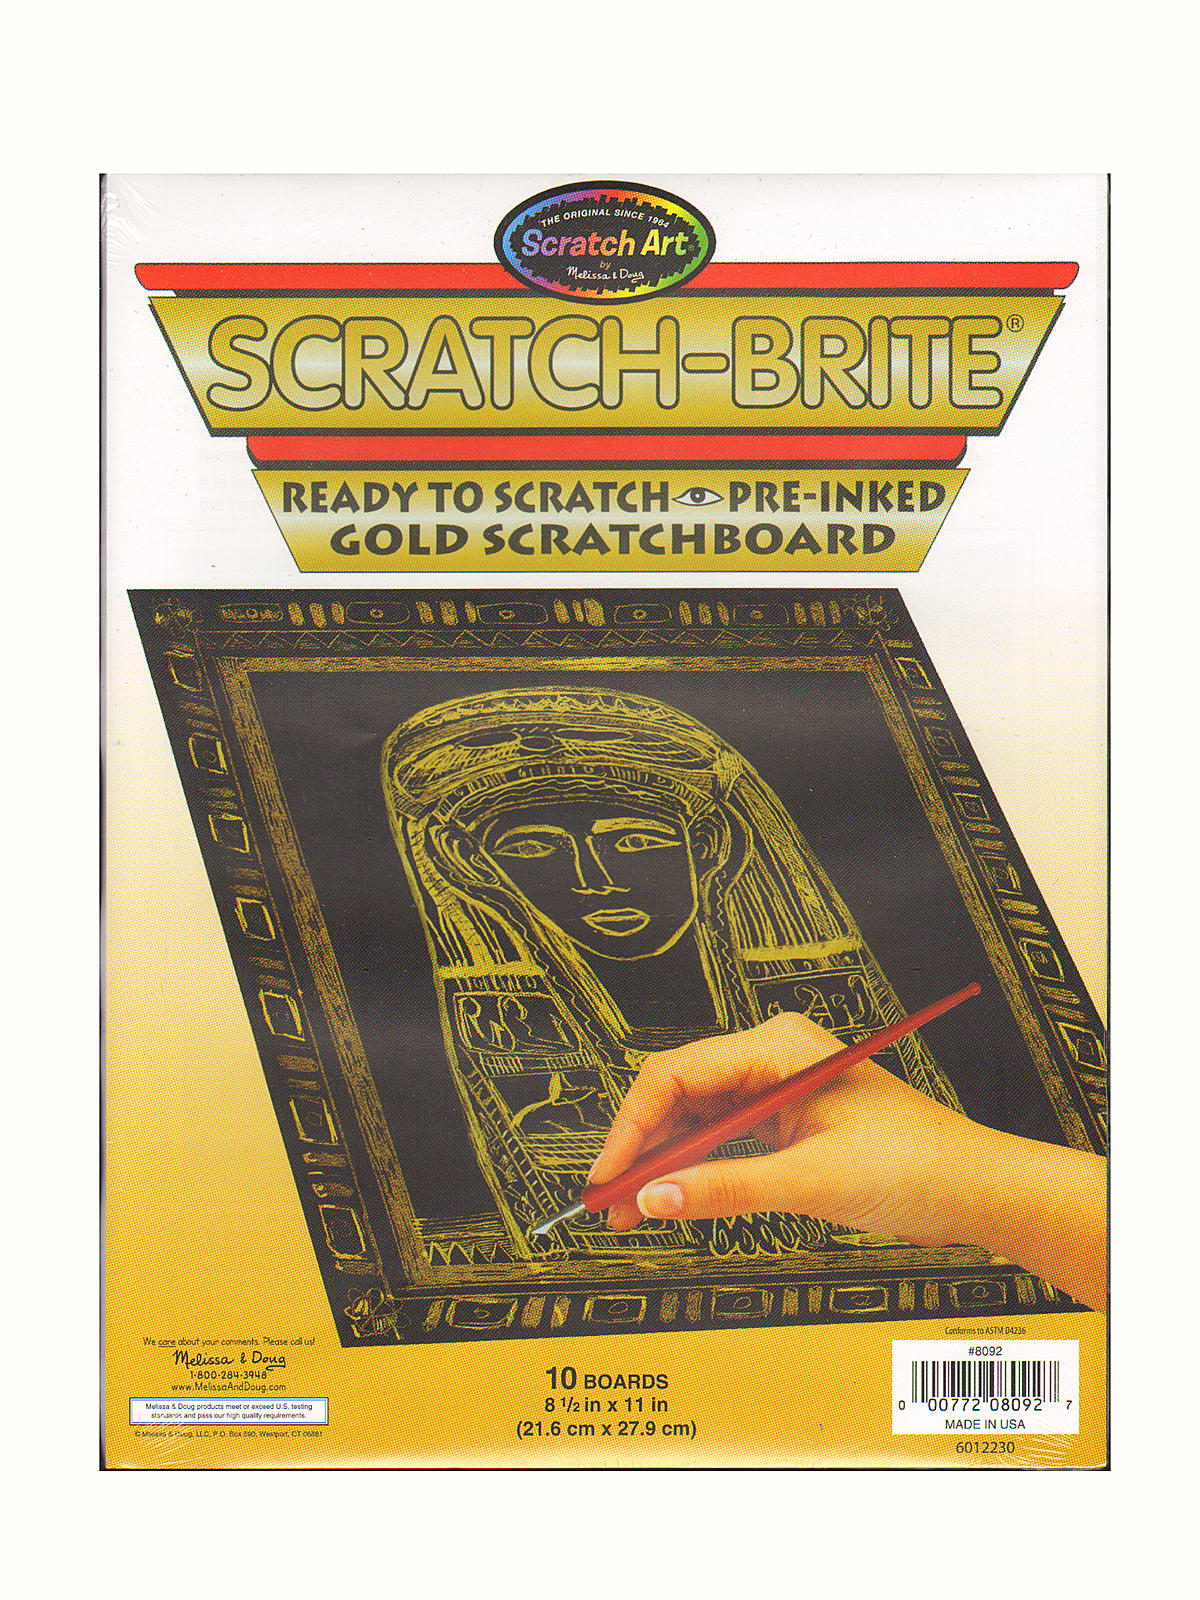 Scratch-brite Scratchboard Gold Pack Of 10